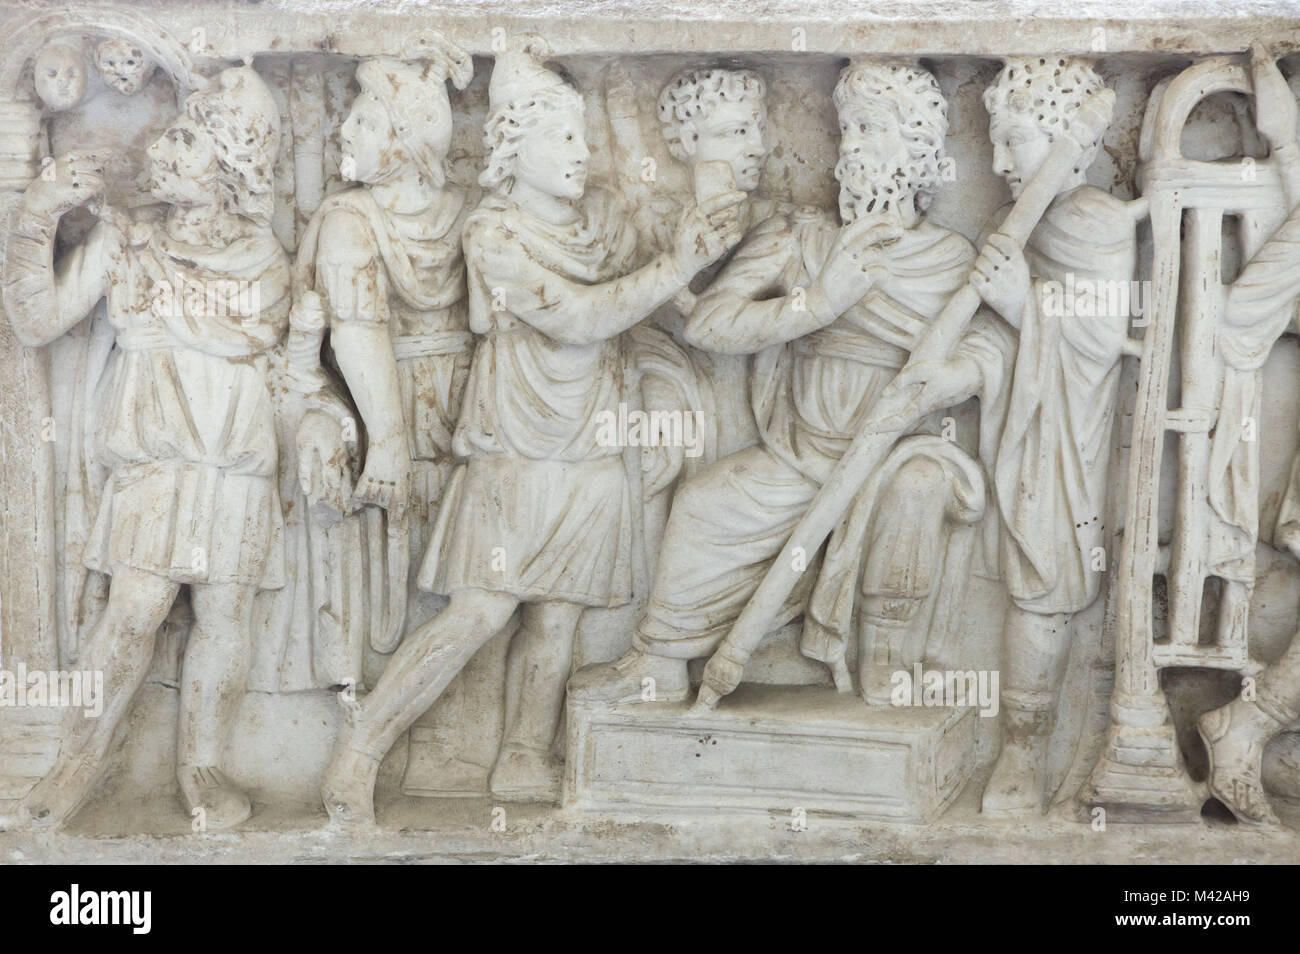 Pélops et King Oinomaos. Sarcophage romain en marbre à partir de la 4ème ANNONCE de siècle sur l'affichage dans le Musée Archéologique National de Naples, Campanie, Italie. Banque D'Images